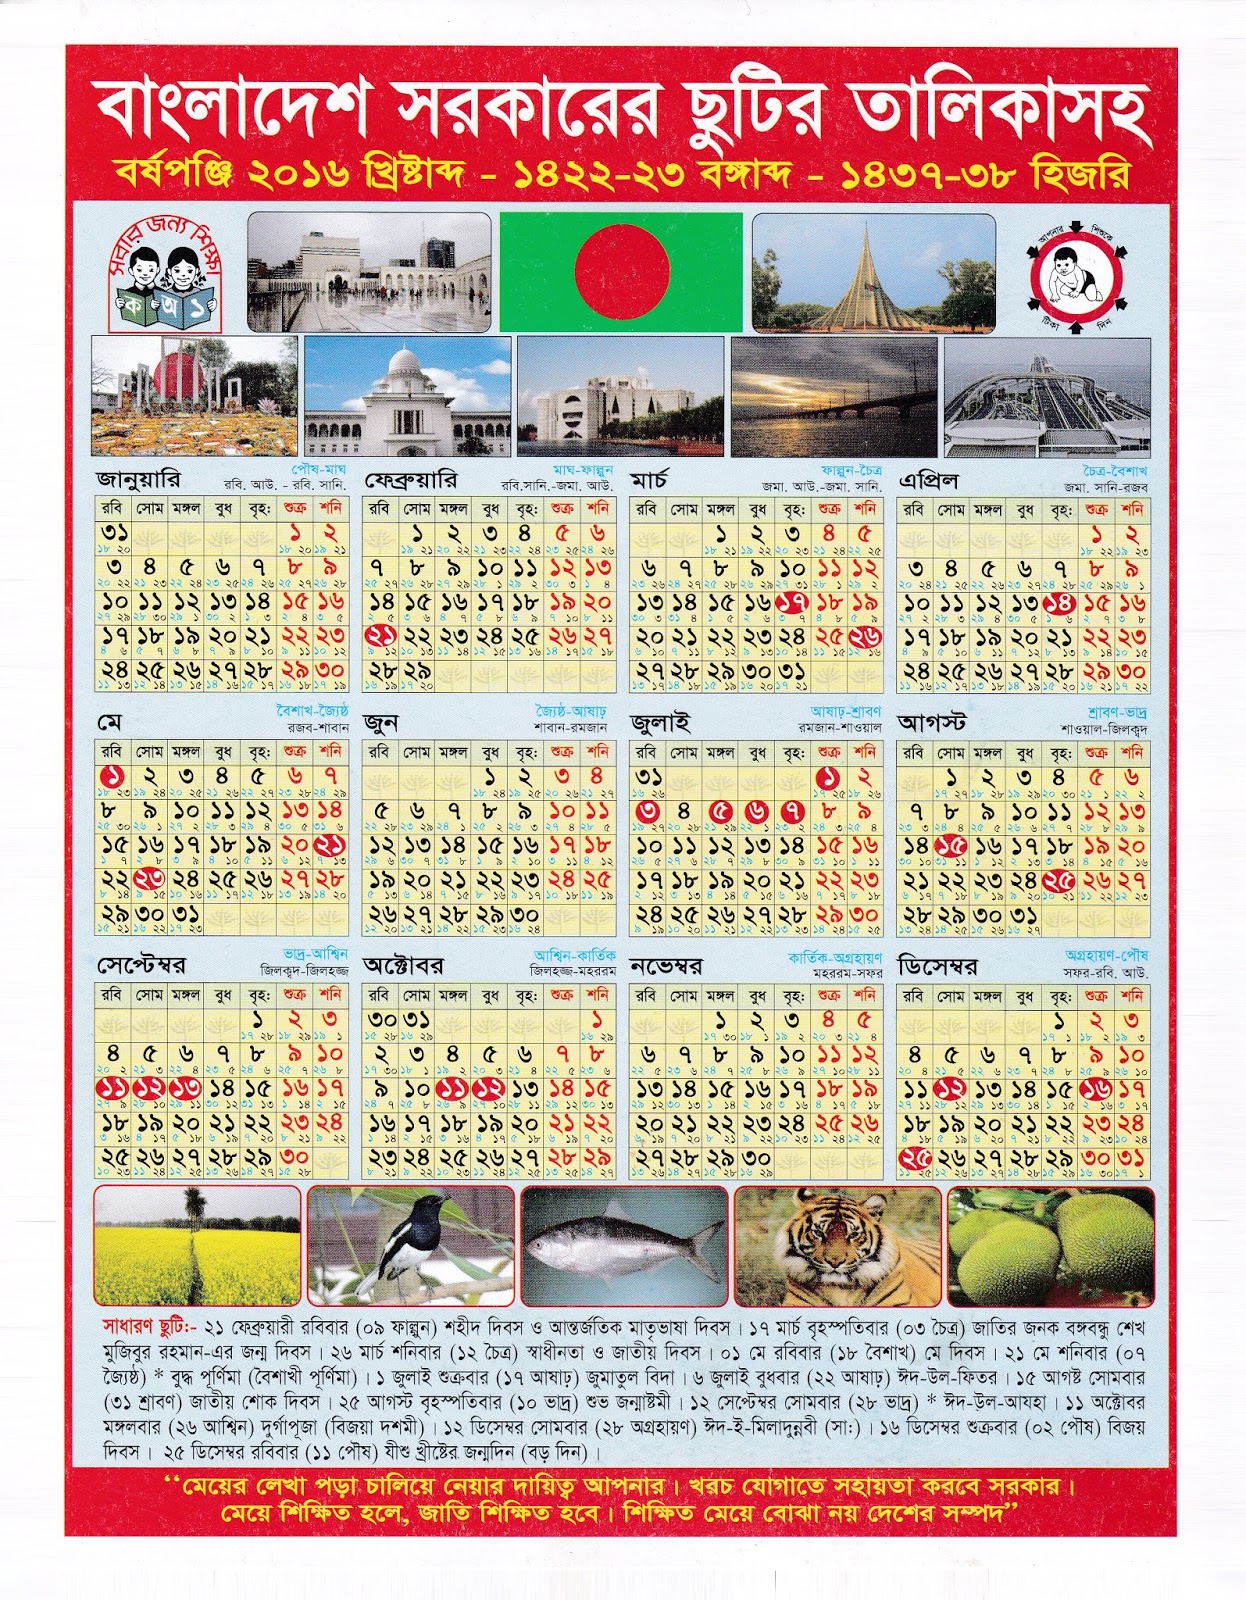 Bangladesh Government Holiday Calendar 2016